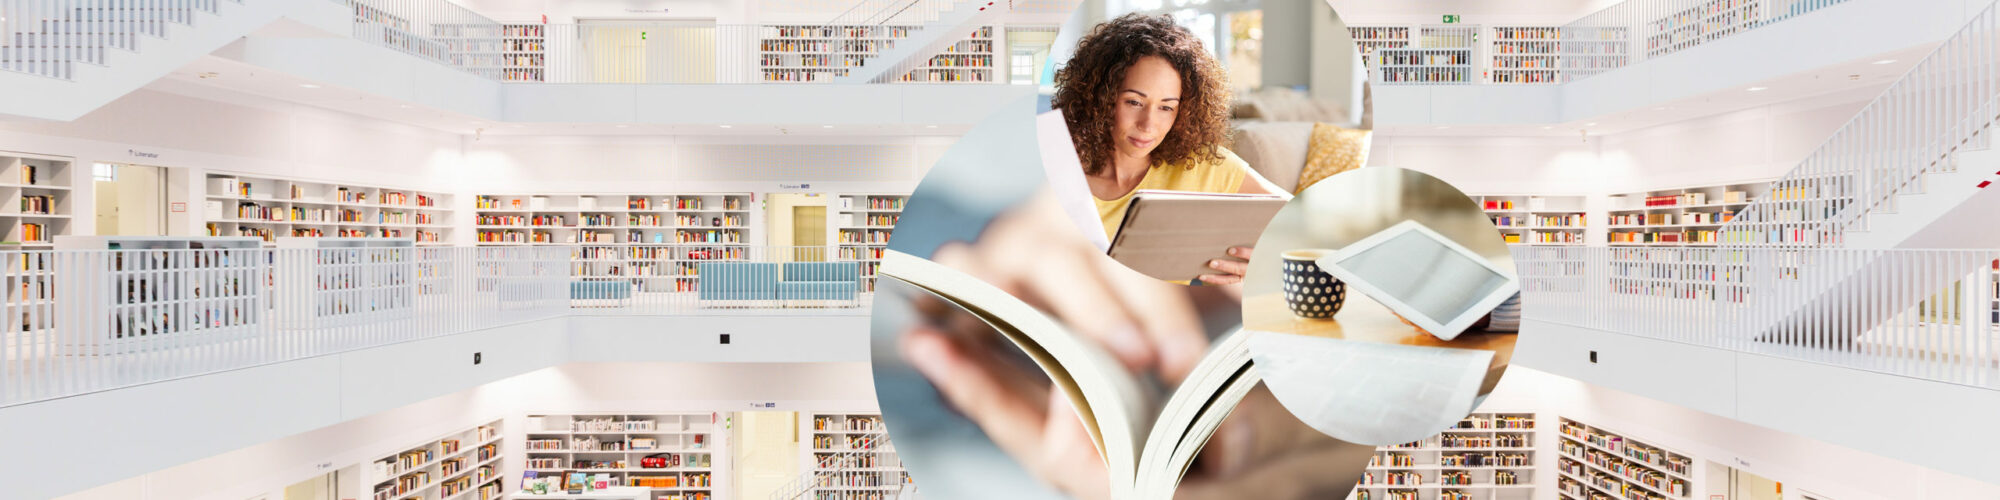 Bild von einer lesenden Frau, daneben ein Bild von einem Tablet und dahinter Bilder von einem Buch und einer Bibliothek, valantic Download Center